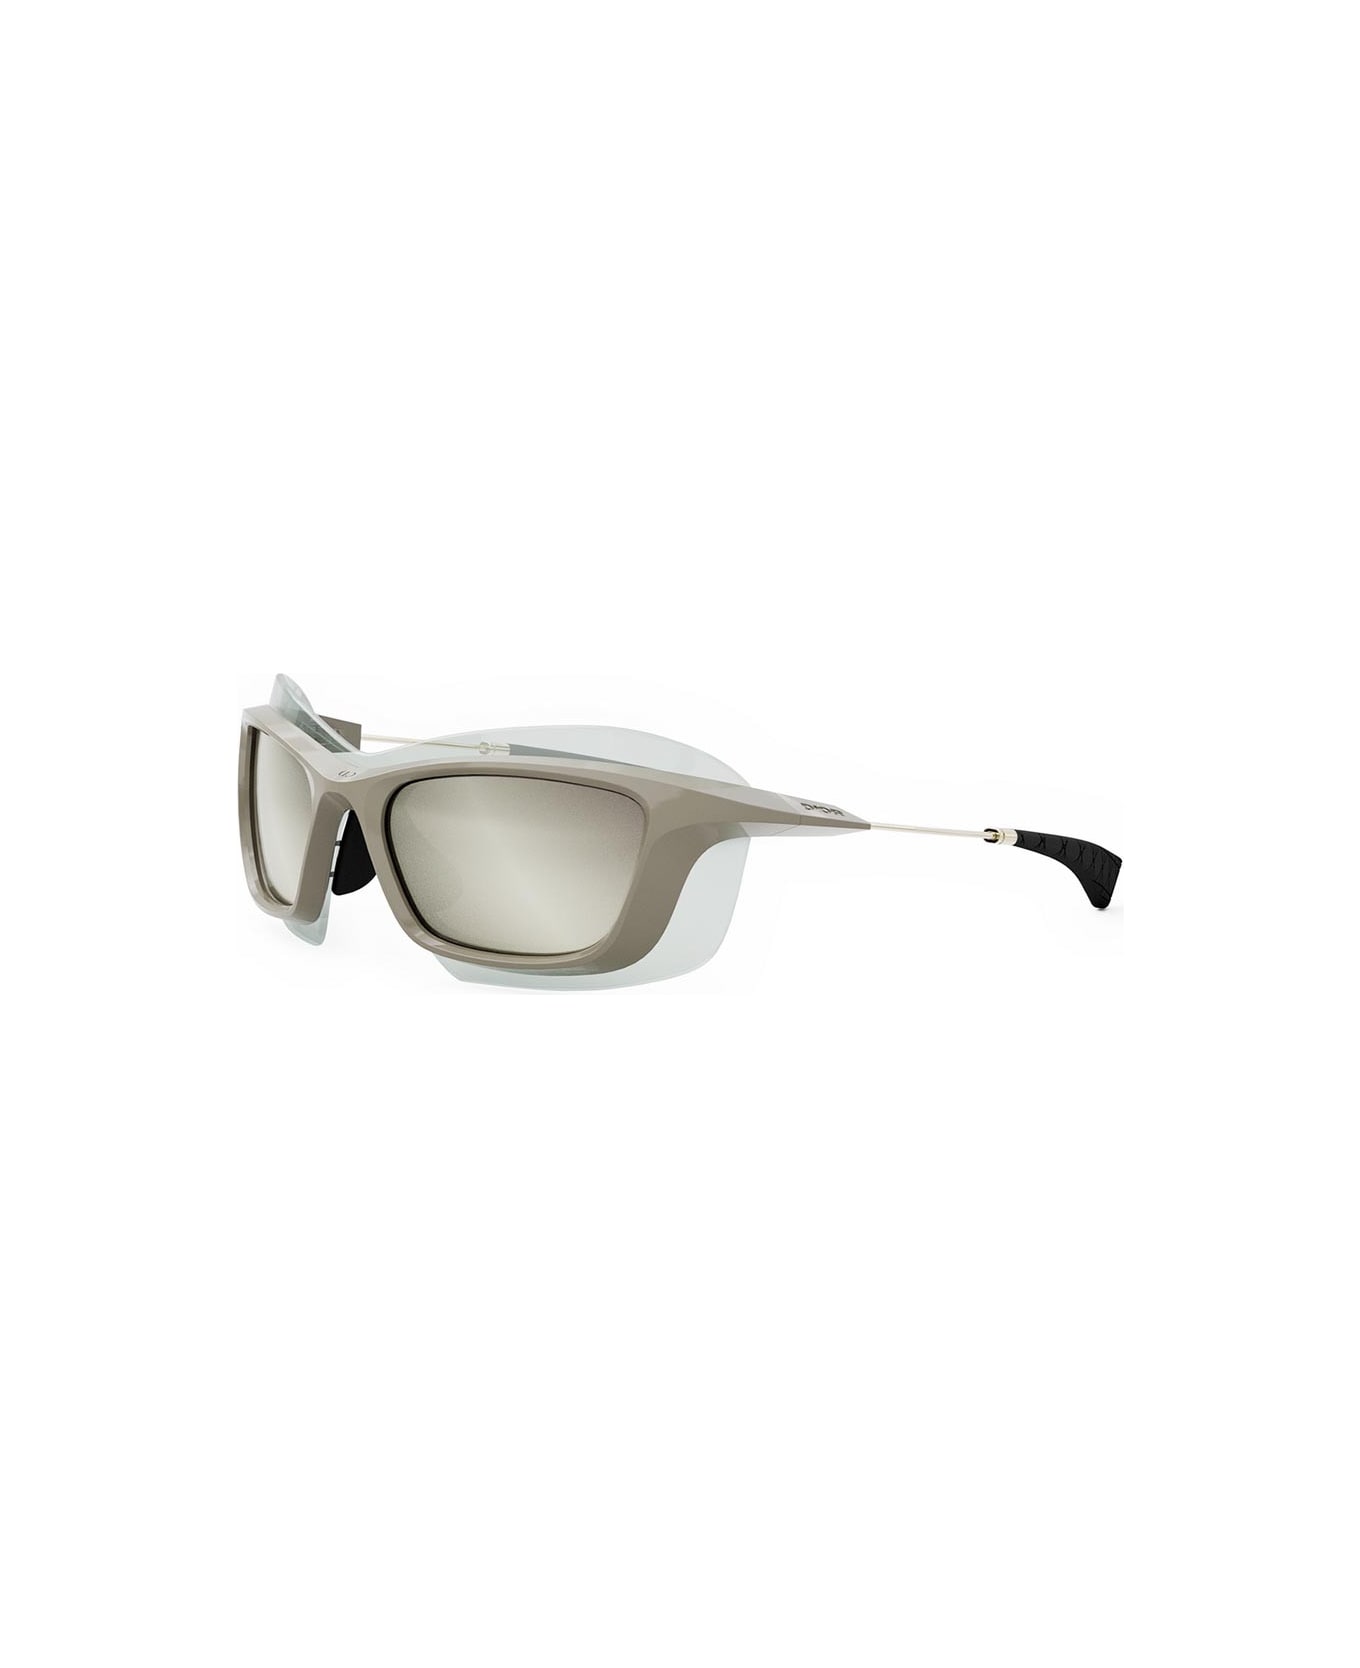 Dior Eyewear Sunglasses - Marrone lucido/Specchiato silver